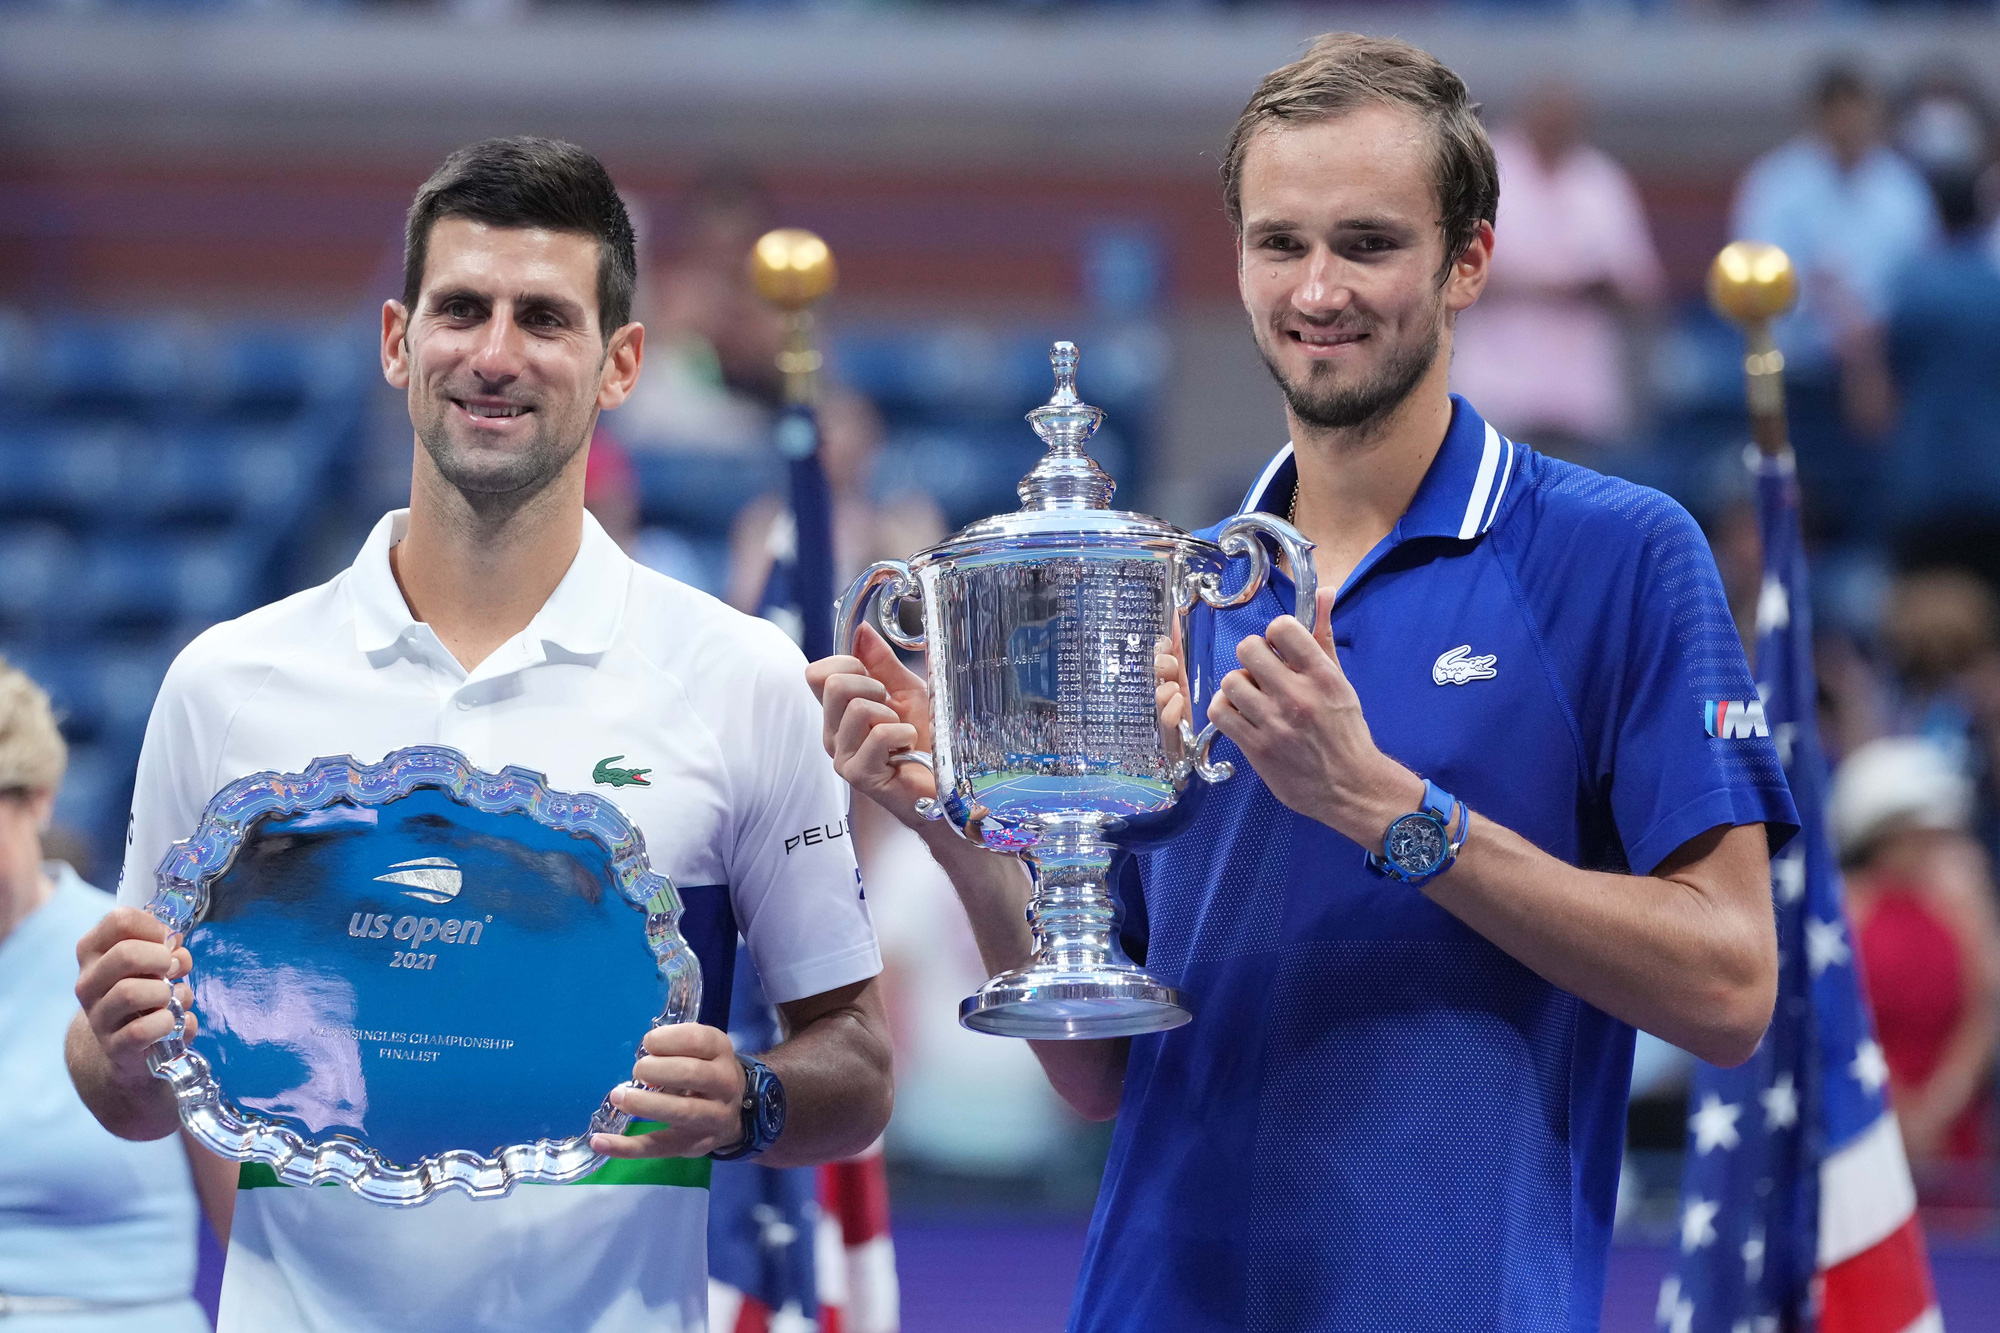 Đánh bại Djokovic, Medvedev vô địch US Open 2021 - Ảnh 9.